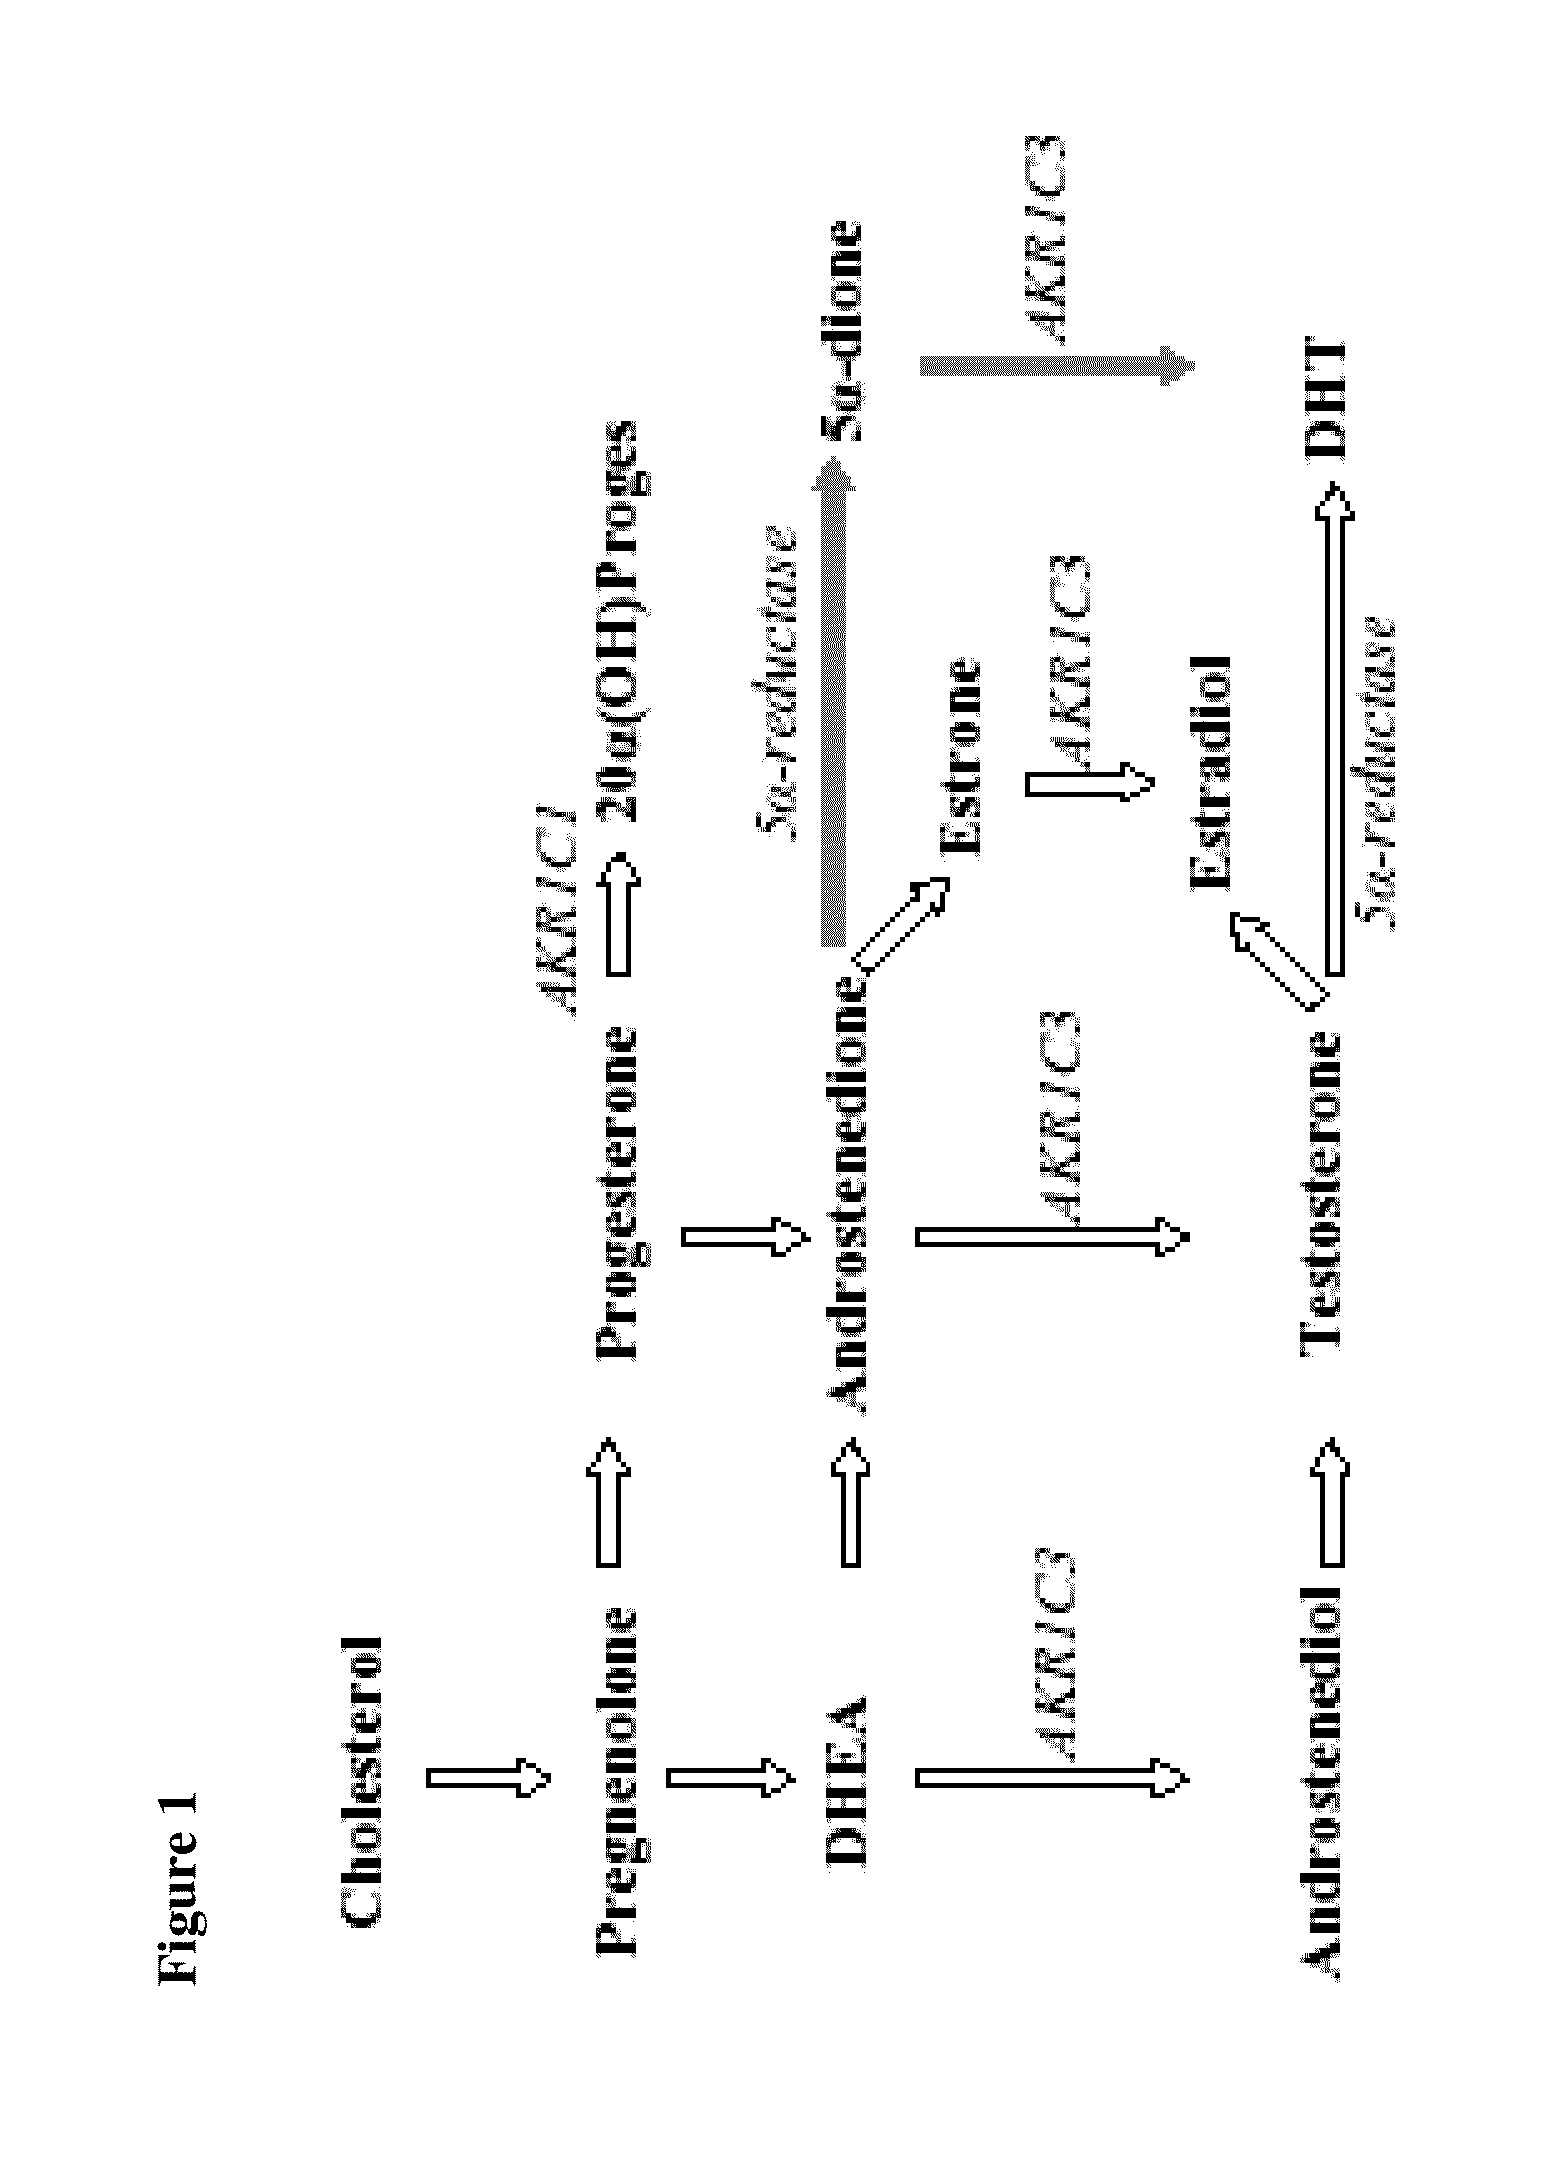 Aldo-keto reductase subfamily 1c3 (AKR1c3) inhibitors